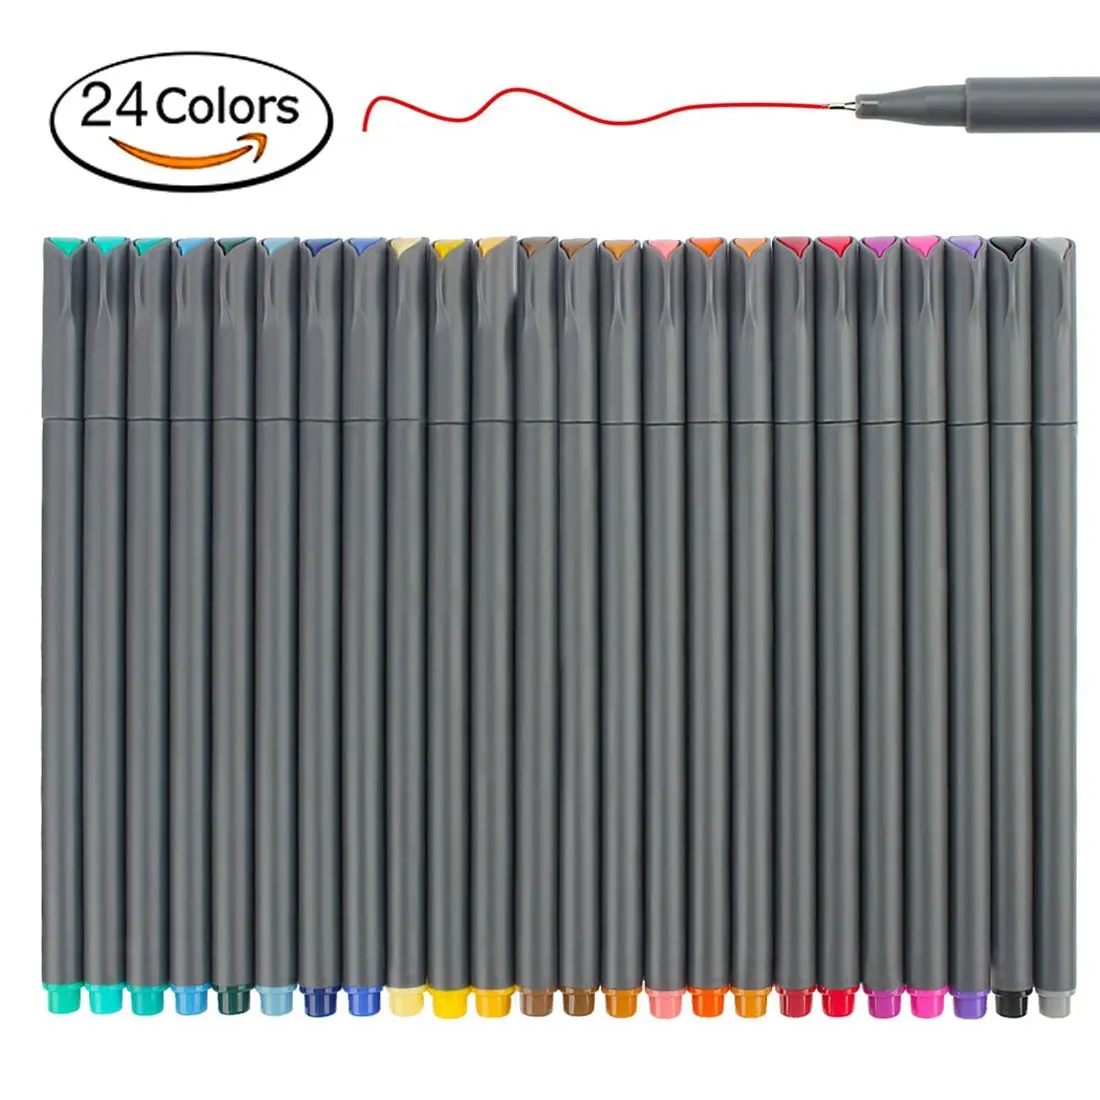 

24 Fineliner Color Pen , Fine Point Drawing Marker Pens for Bullet Journal Planner Coloring Book Sketch Taking Note Calendar Art